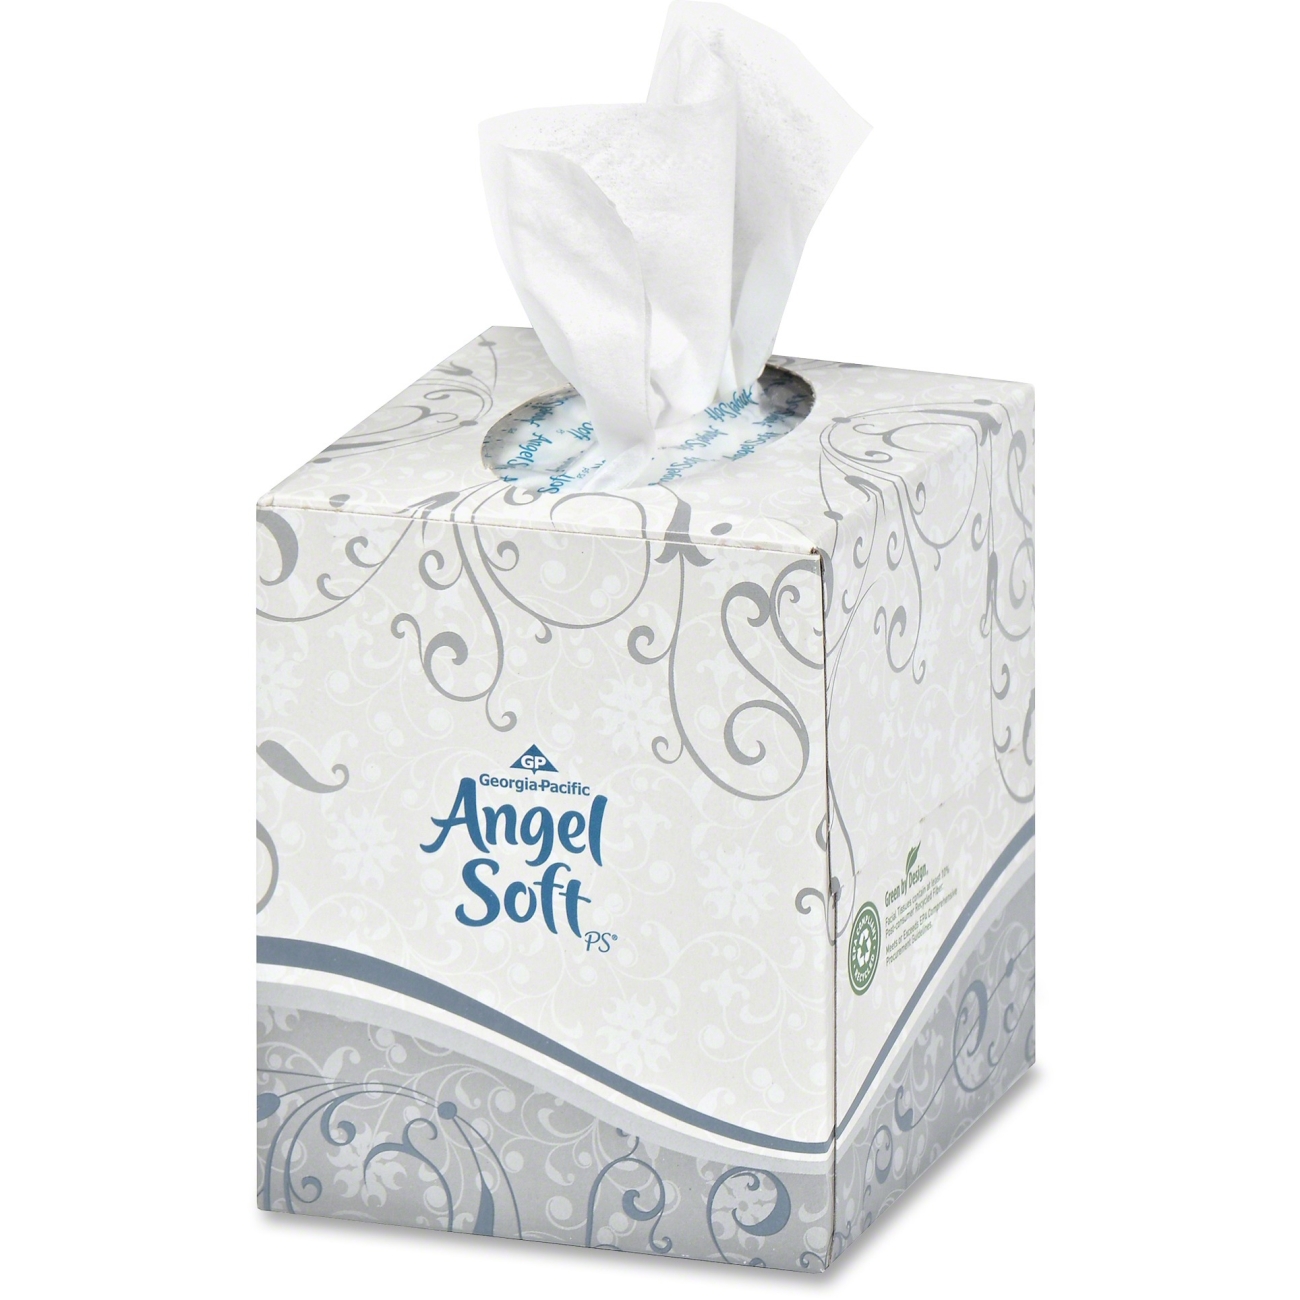 ANGEL SOFT WHITE PREMIUM
FACIAL TISSUE CUBE BOX 36/96
CS 